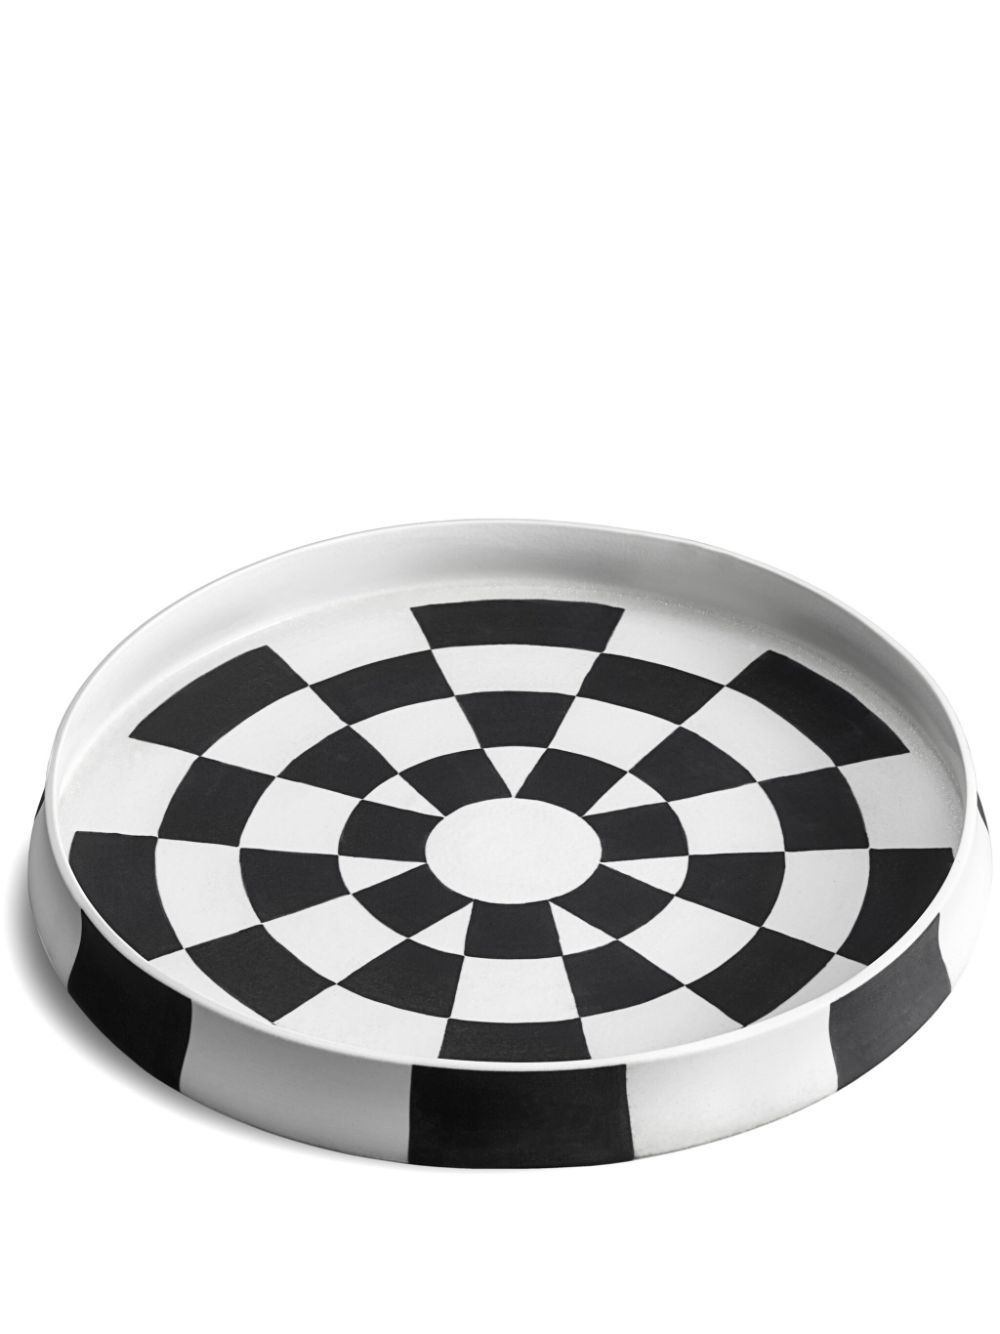 L'Objet Damier porcelain round platter (42cm) - Black von L'Objet